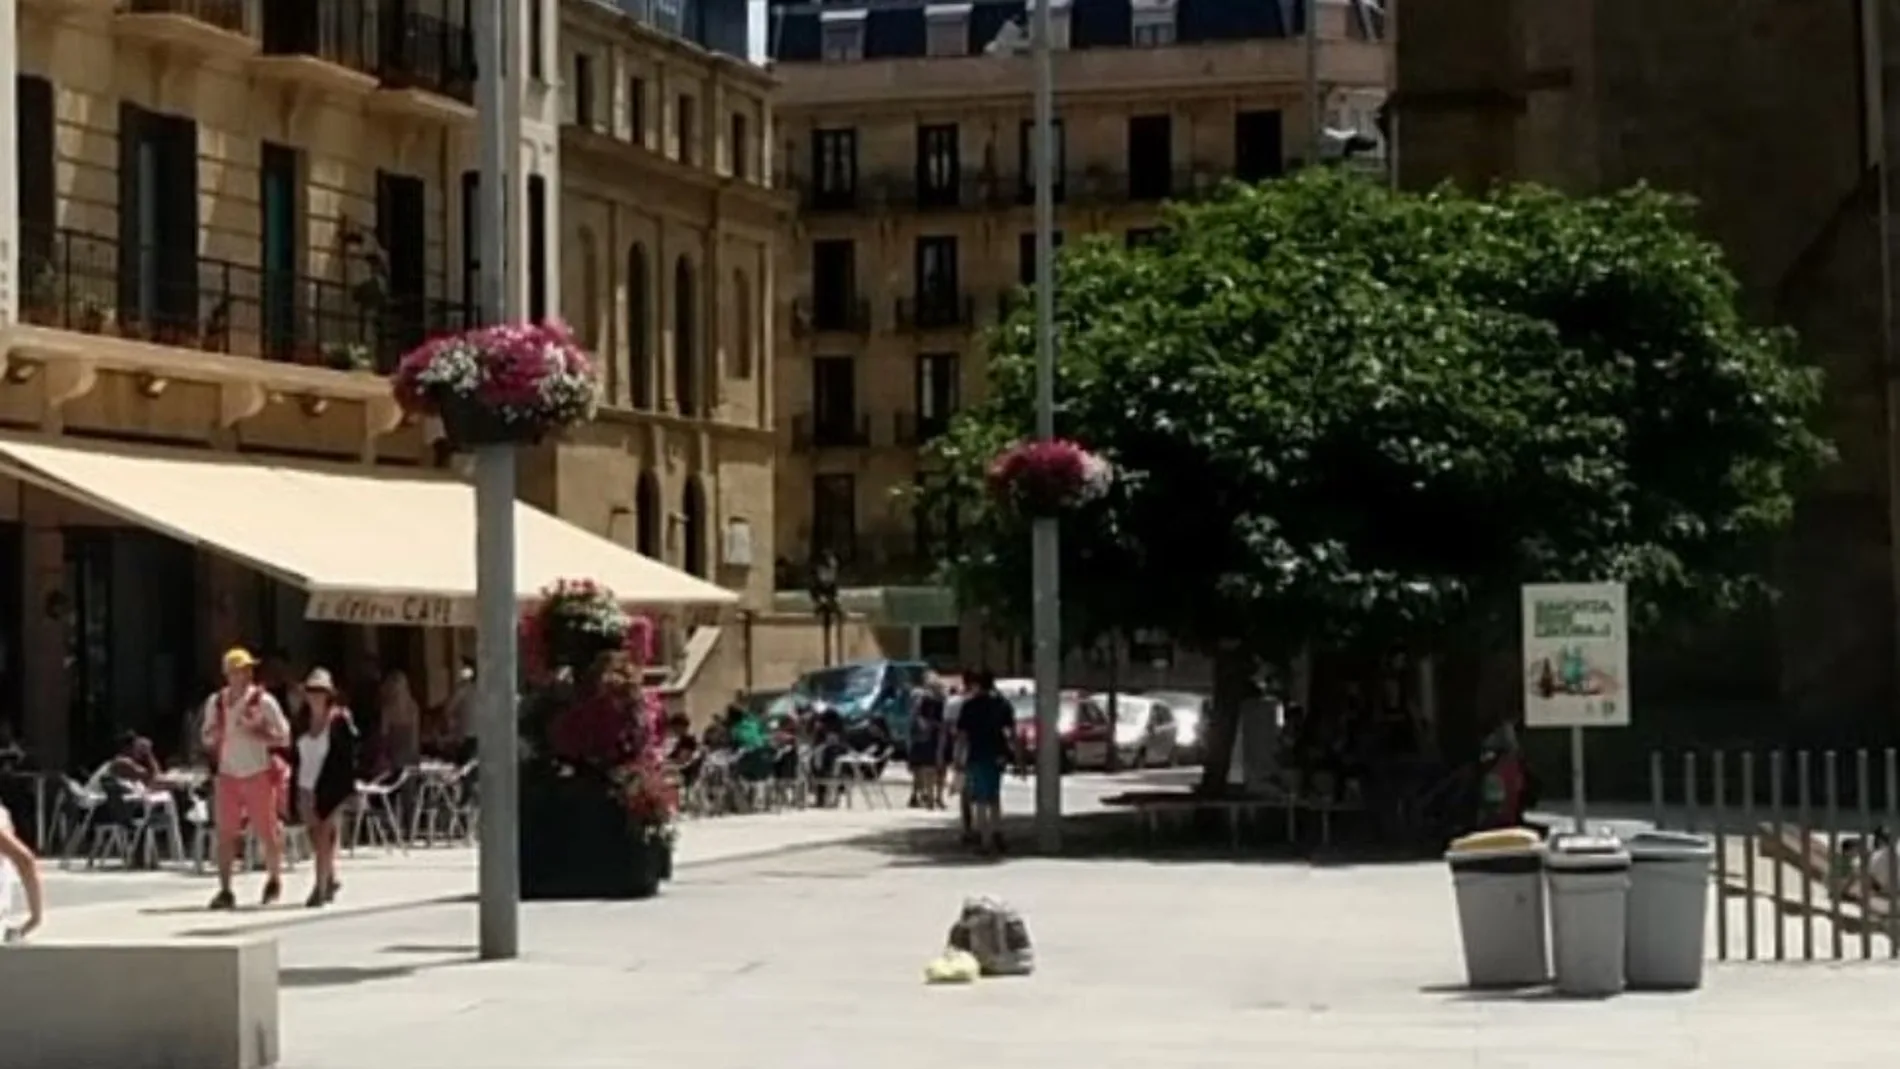 La recién nacida fue abandonada en un contenedor de basura en la plaza Zuloaga de San Sebastián